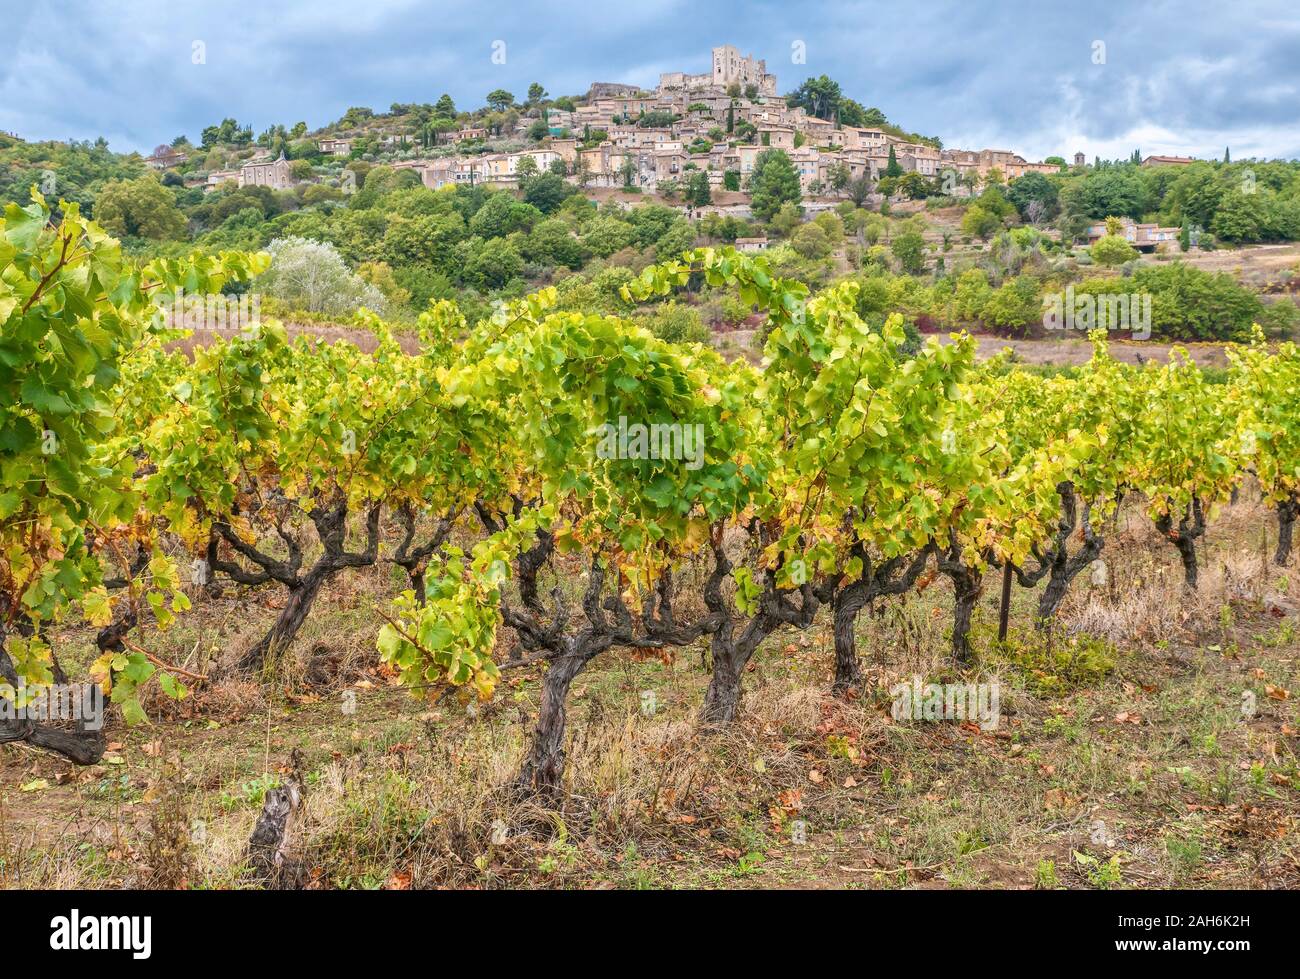 Vieux, noueux de vignes dans un vignoble en dessous du village historique de Lacoste, perché sur une colline dans la région du Luberon en Provence, France. Banque D'Images